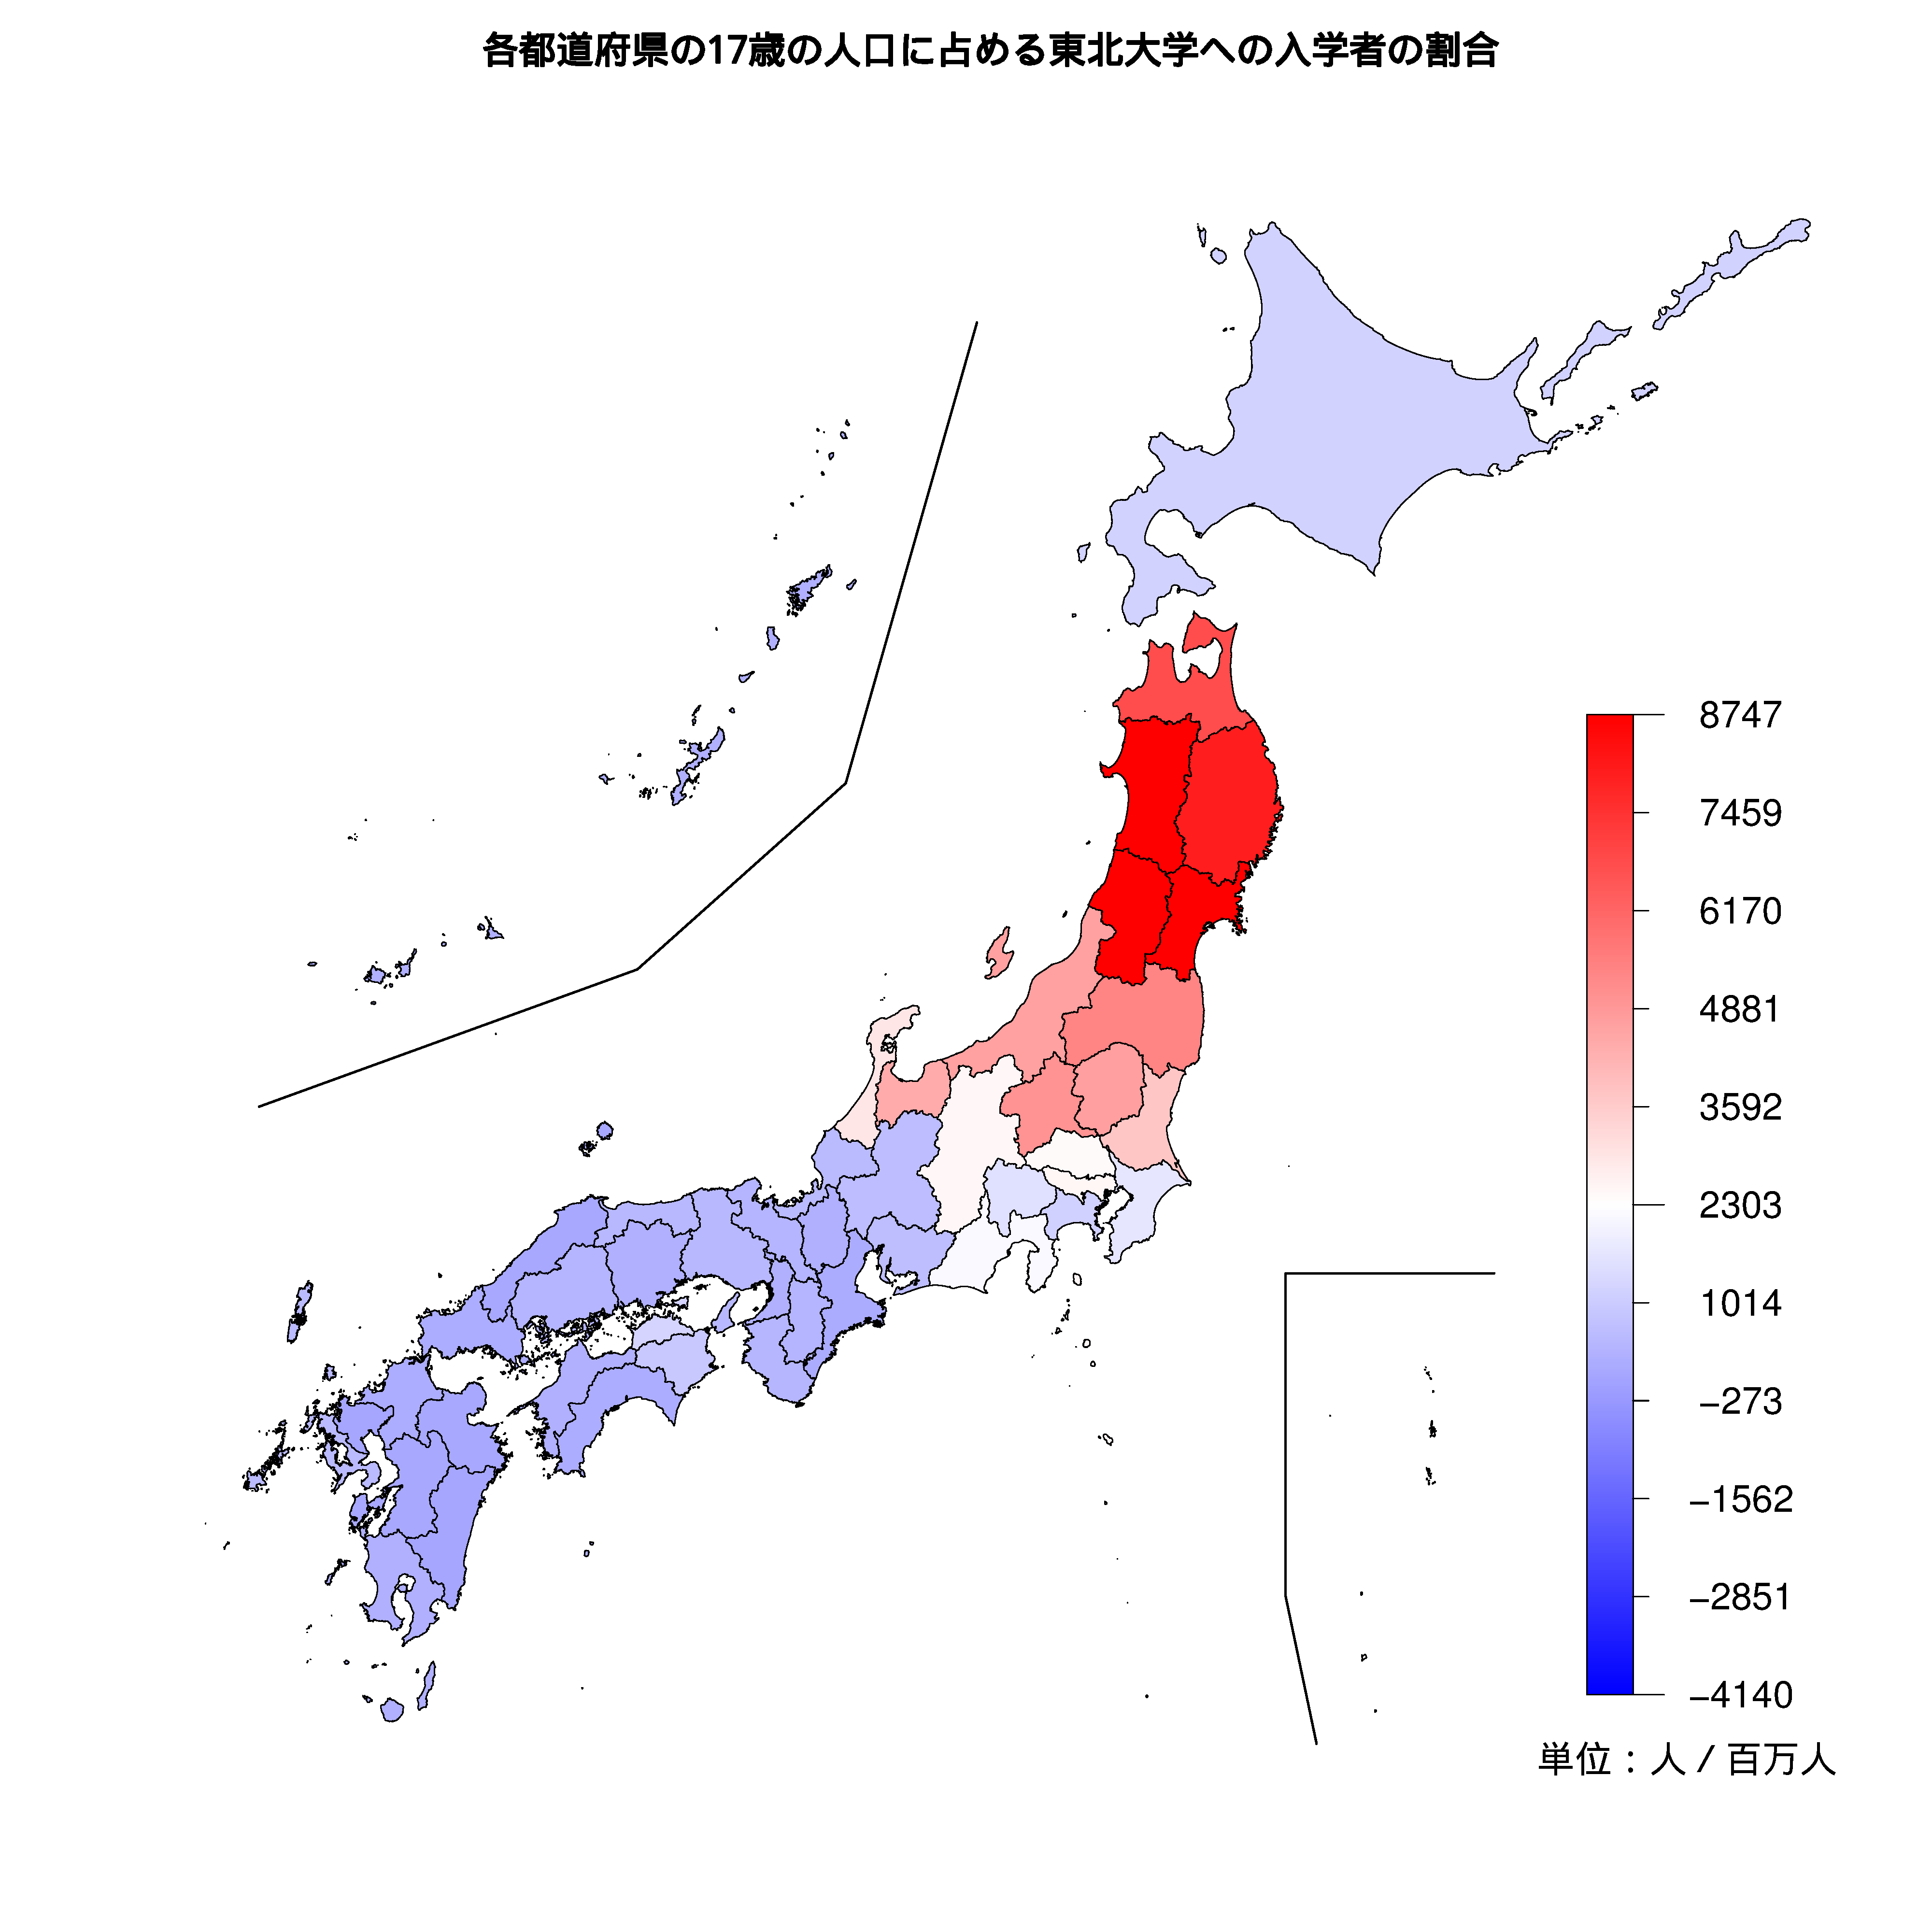 東北大学への入学者が多い都道府県の色分け地図